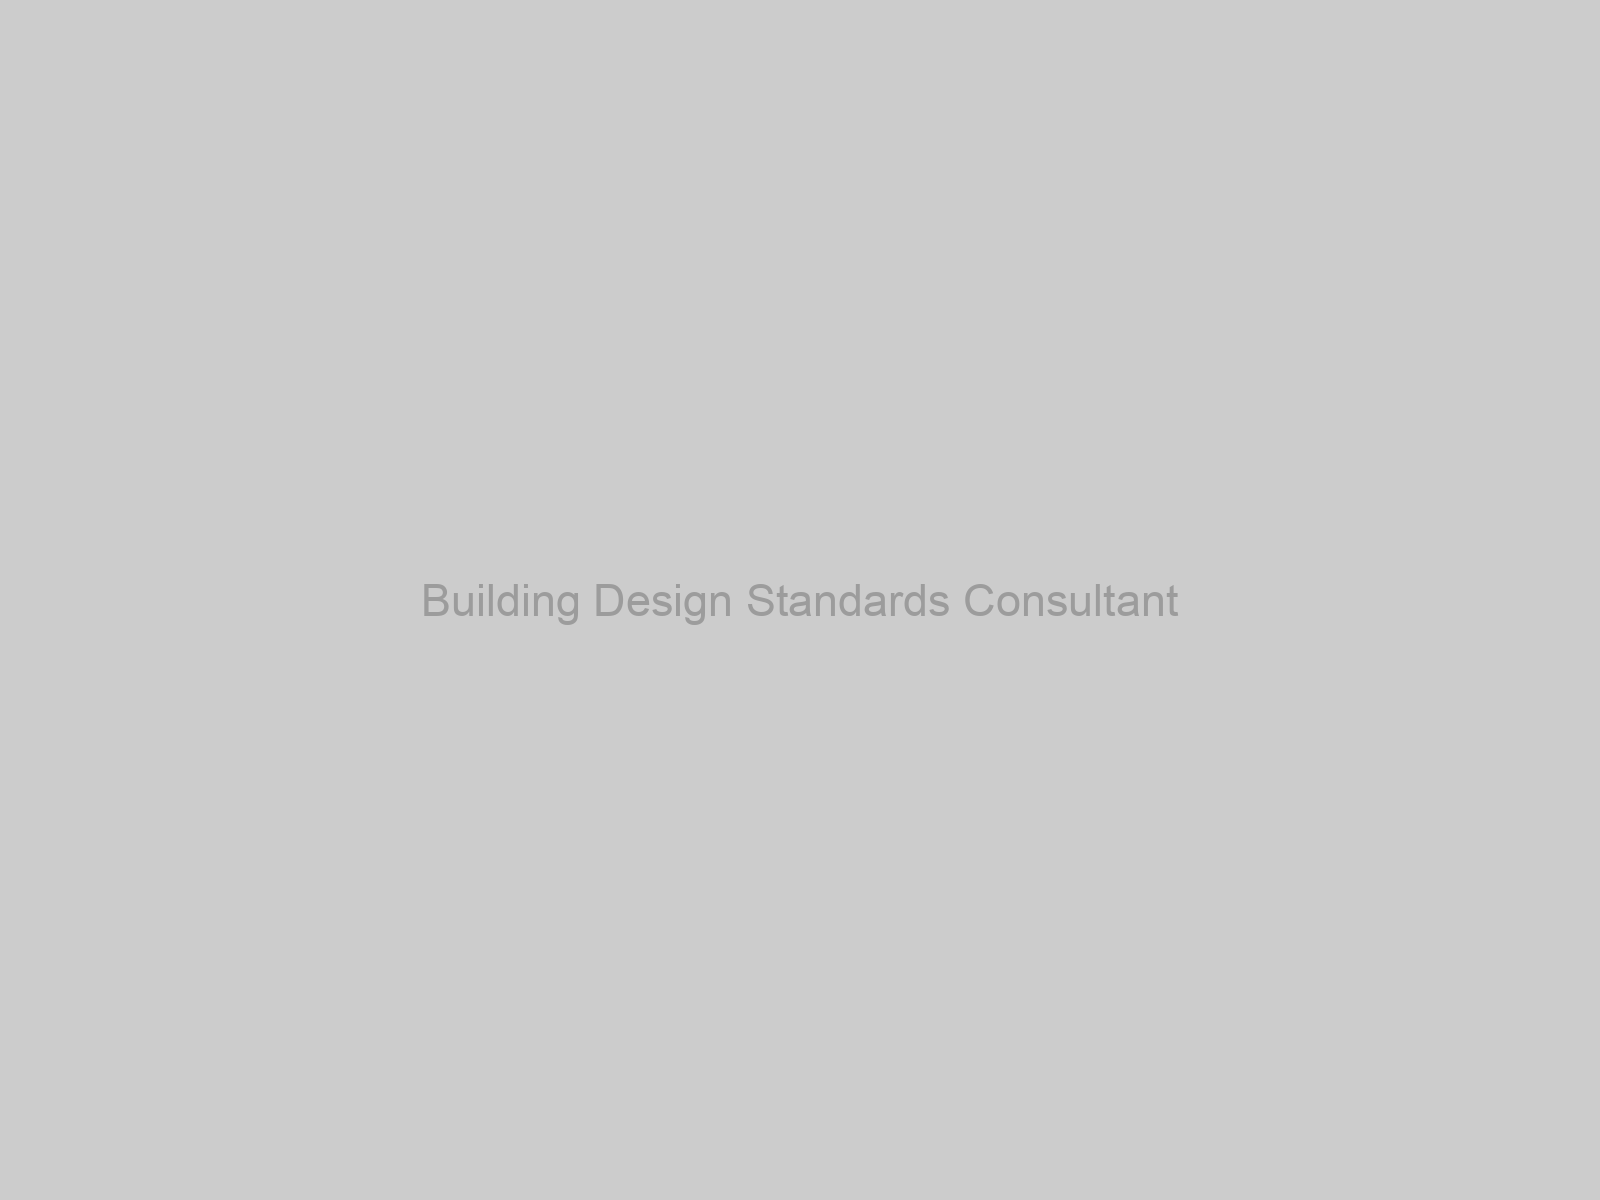 Building Design Standards Consultant